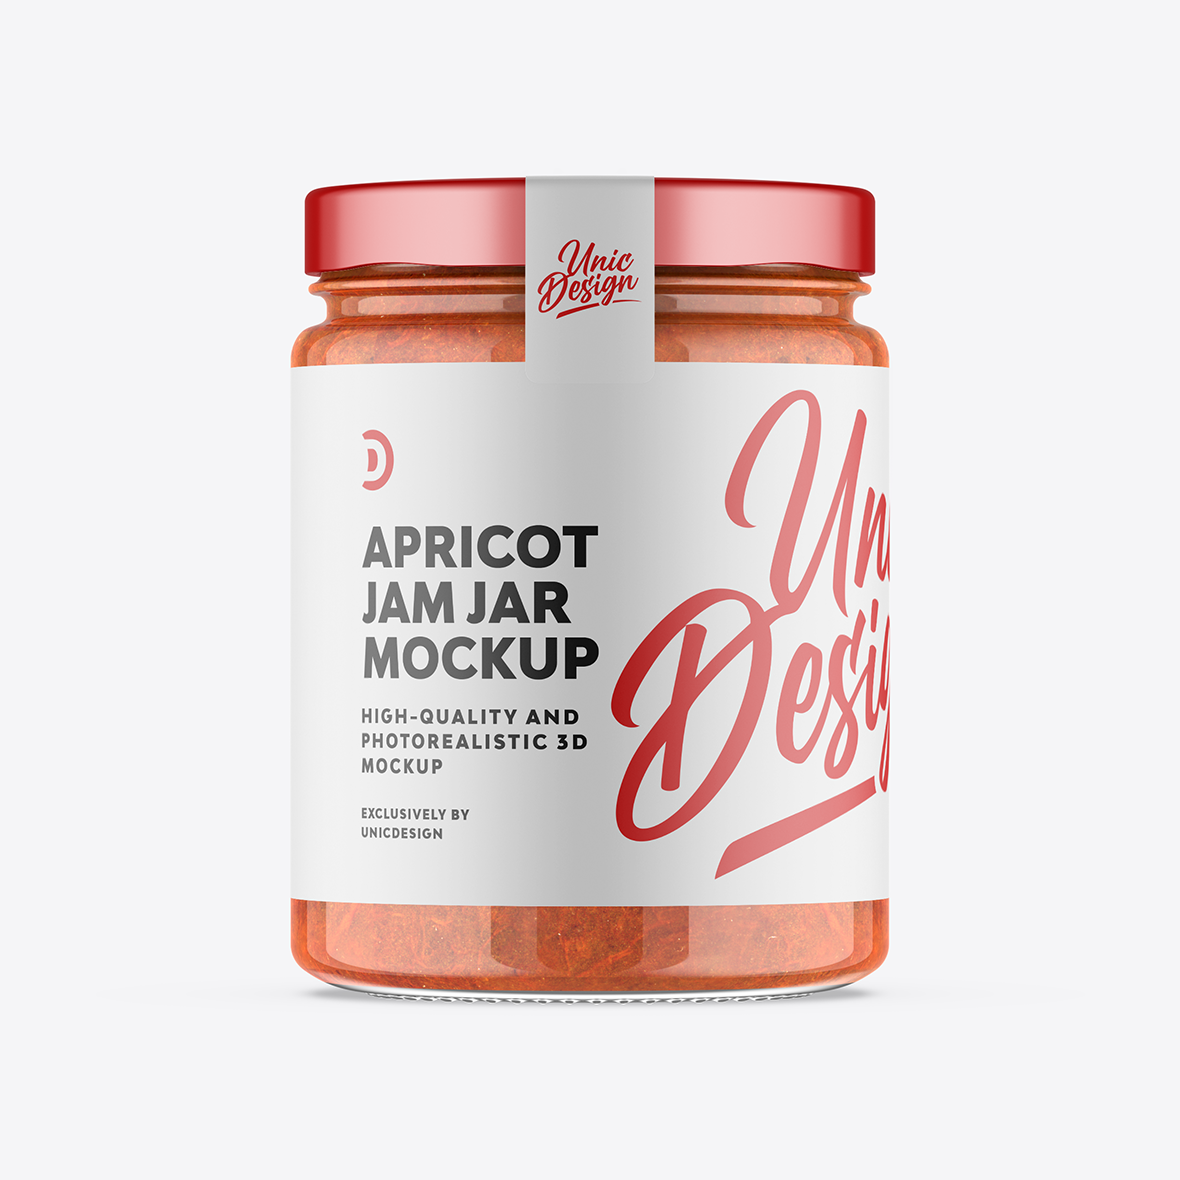 Apricot Jam Jar Mockup